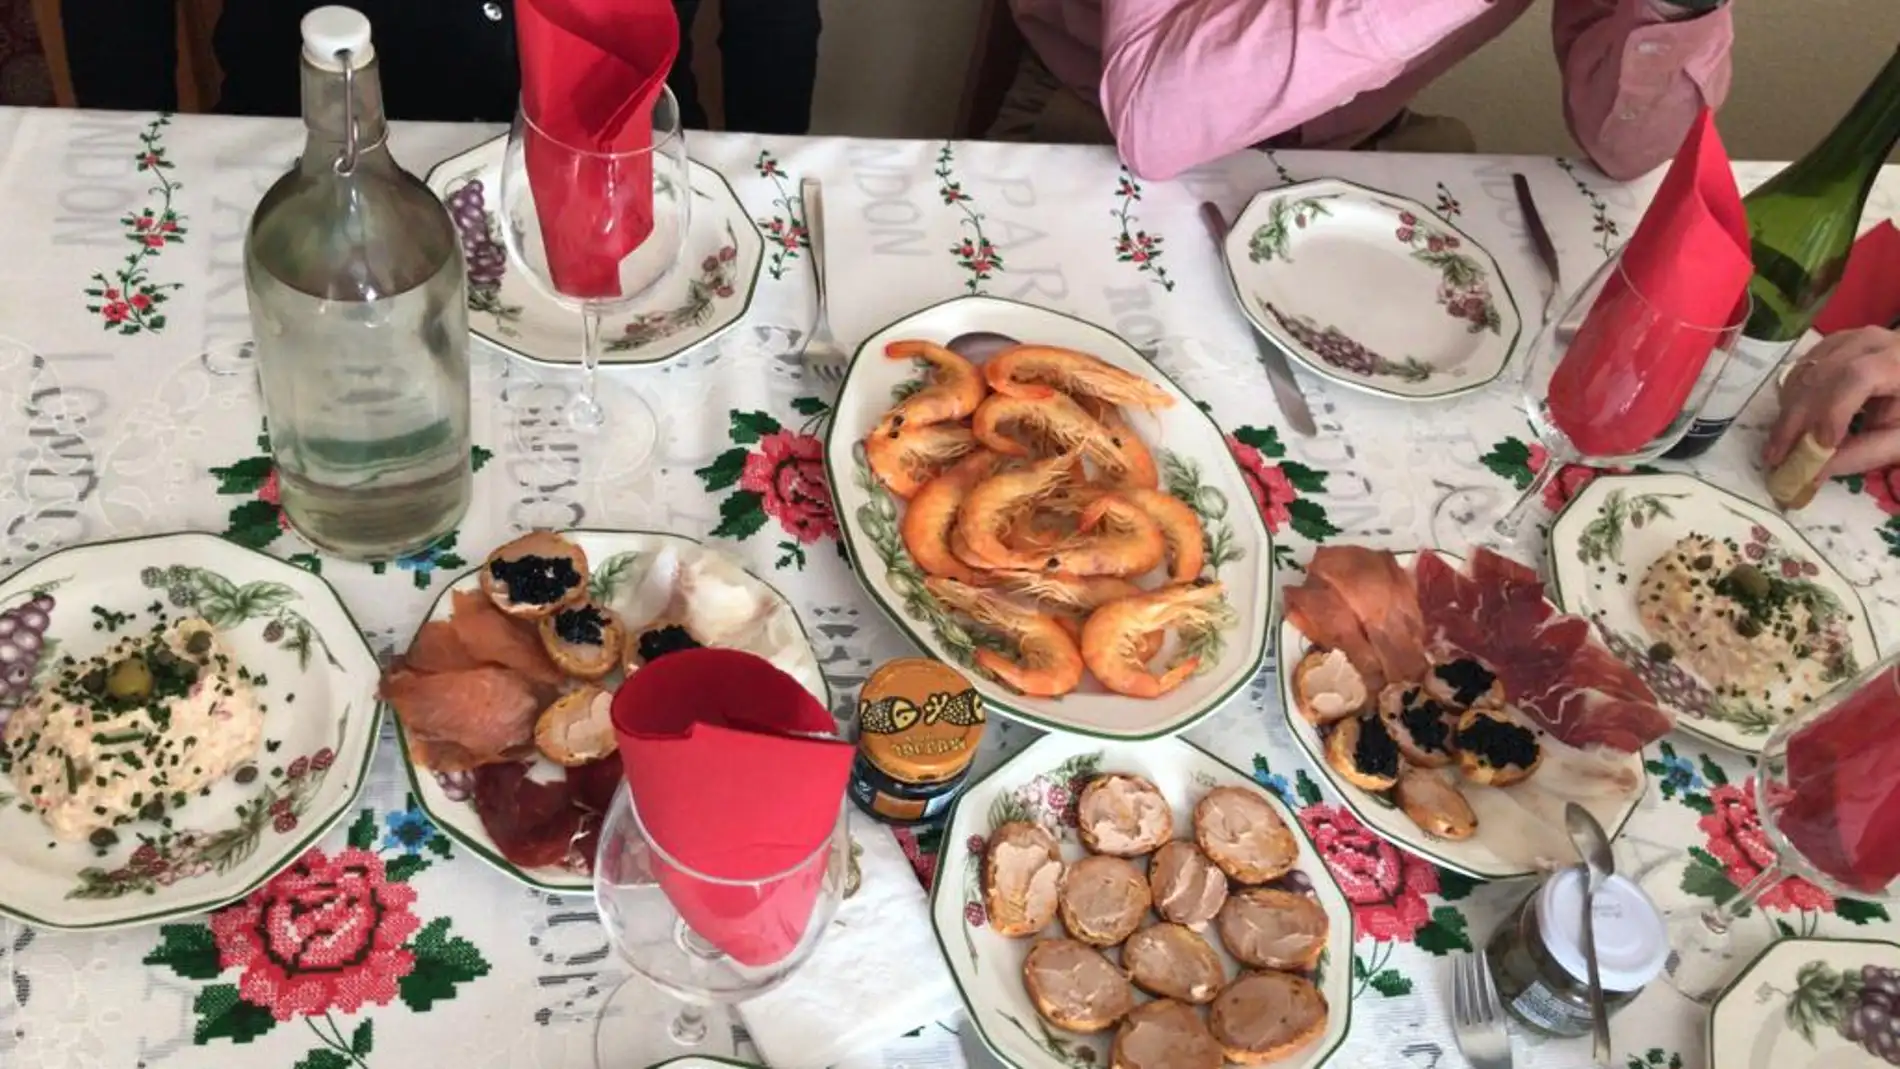 Una abuela decide cobrar a su familia 200 euros por la cena de Nochebuena Onda Cero Radio